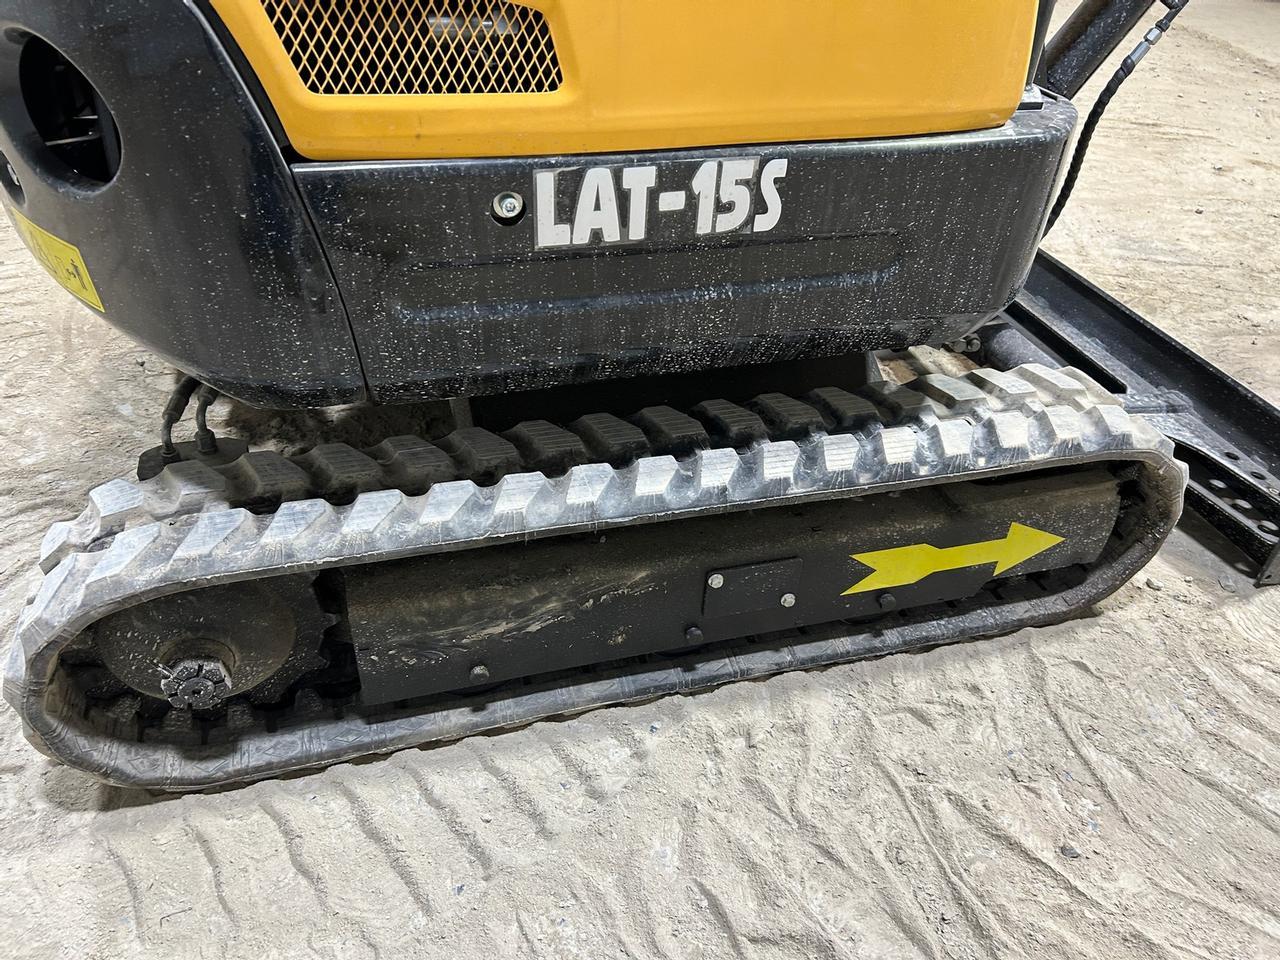 Lanty LAT-15 Mini Excavator